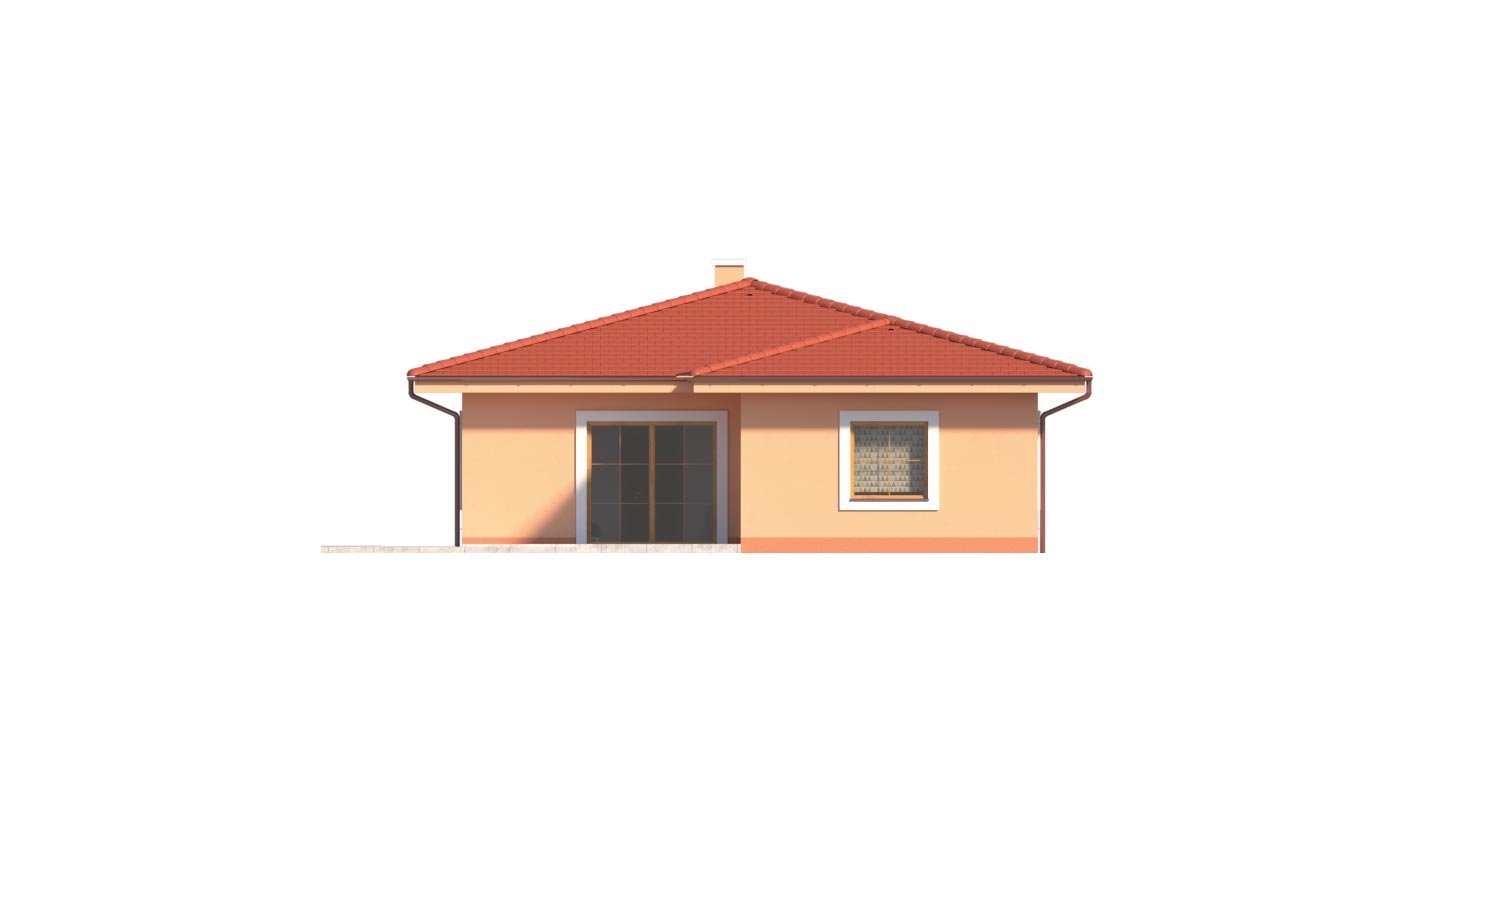 Zrkadlový pohľad 3. - Krásný 5-pokojový zděný bungalov s valbovou střechou a krbem.